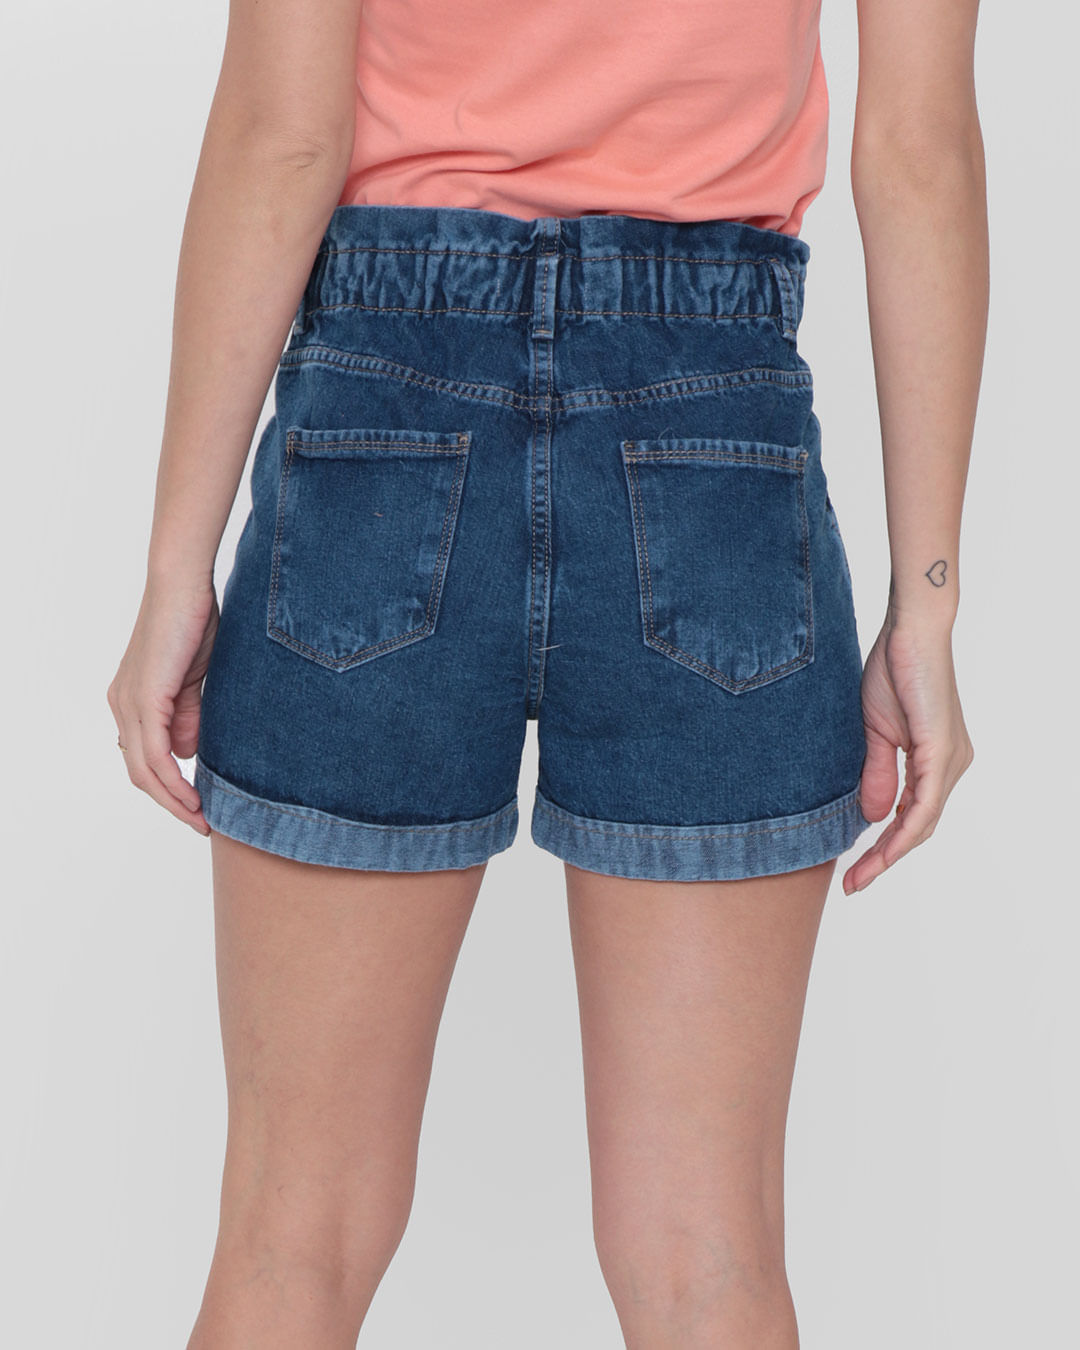 Shorts-Jeans-Feminina-Clochard-Bolsos-Azul-Medio